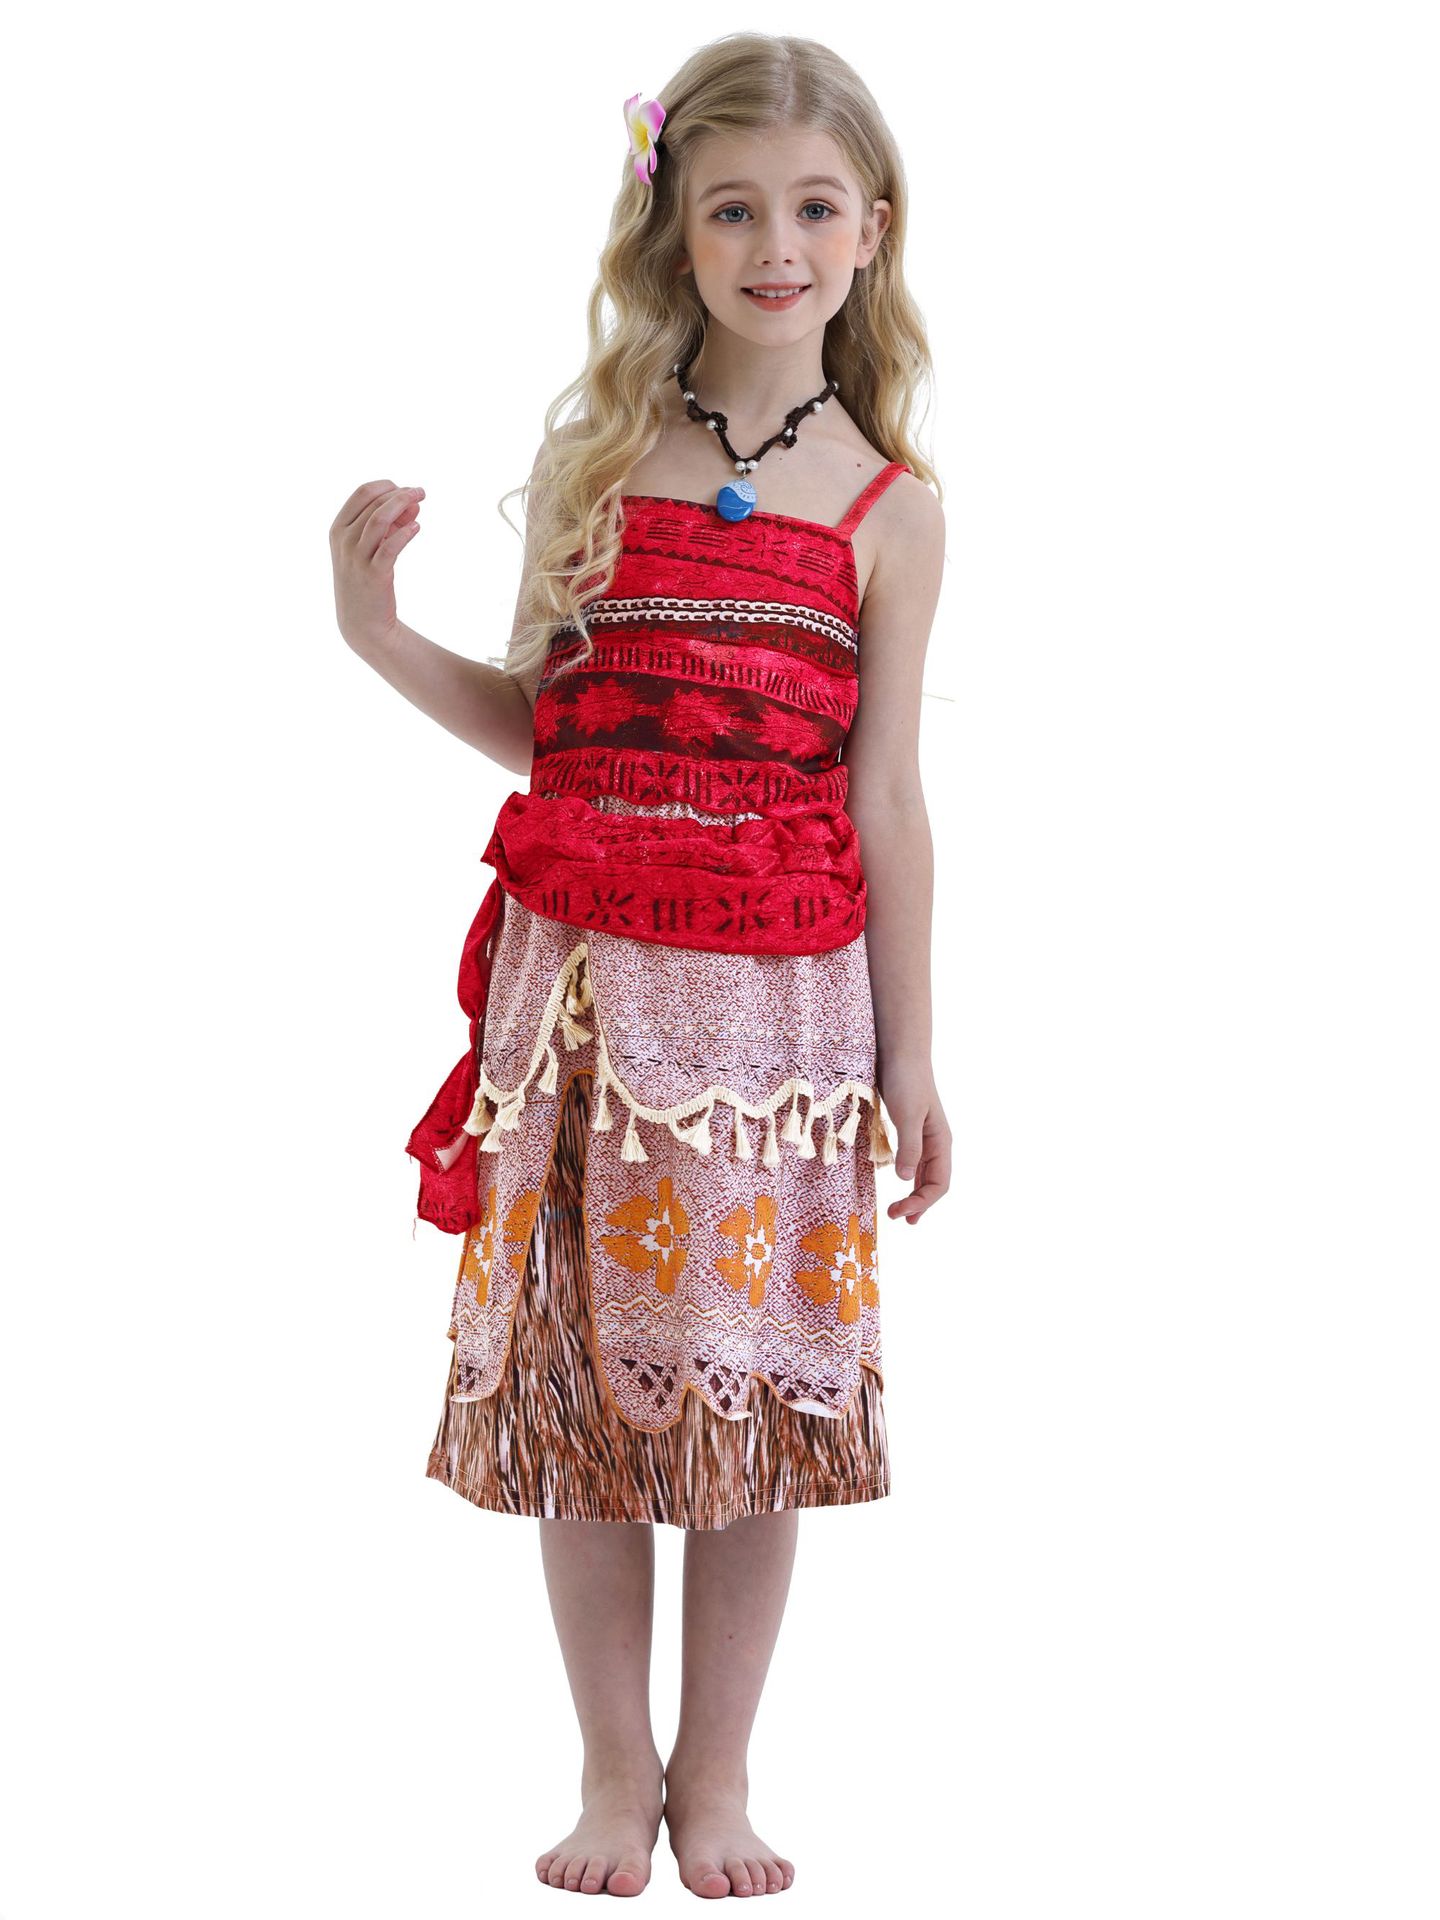 南国 ハワイ 民族衣装 01 コスチューム 子供 仮装 女の子 コスチューム ダンス 衣装 コスプレ プレゼント リトルプリンセス